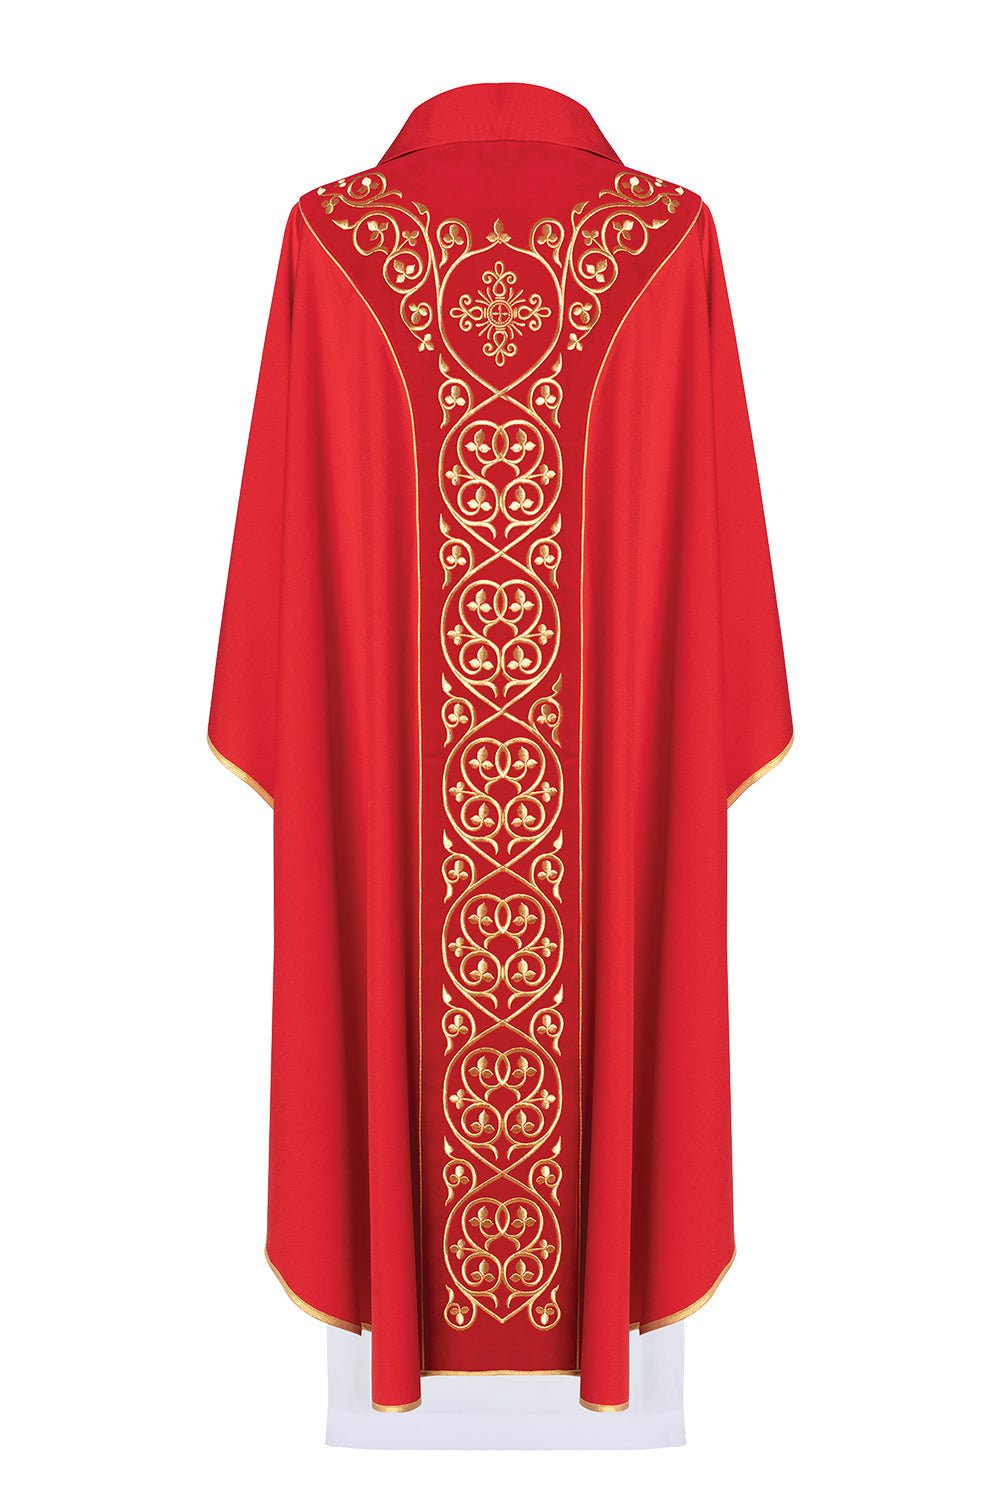 Ornat liturgiczny zdobiony haftem na aksamicie KOR/169 Czerwony